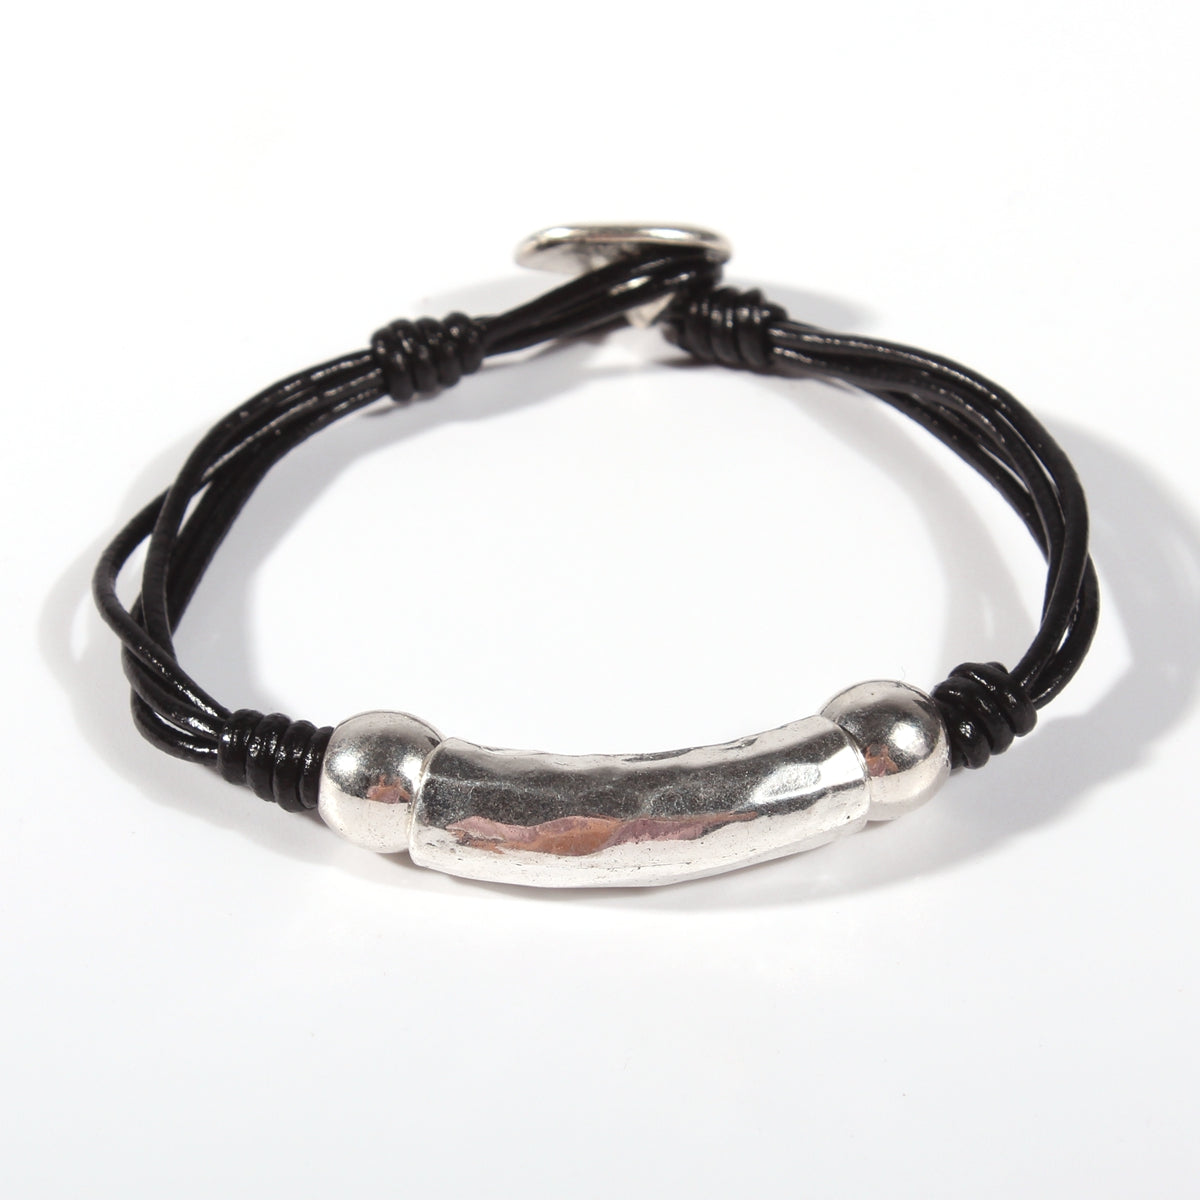 Genuine leather handmade women's bracelet MBR-14